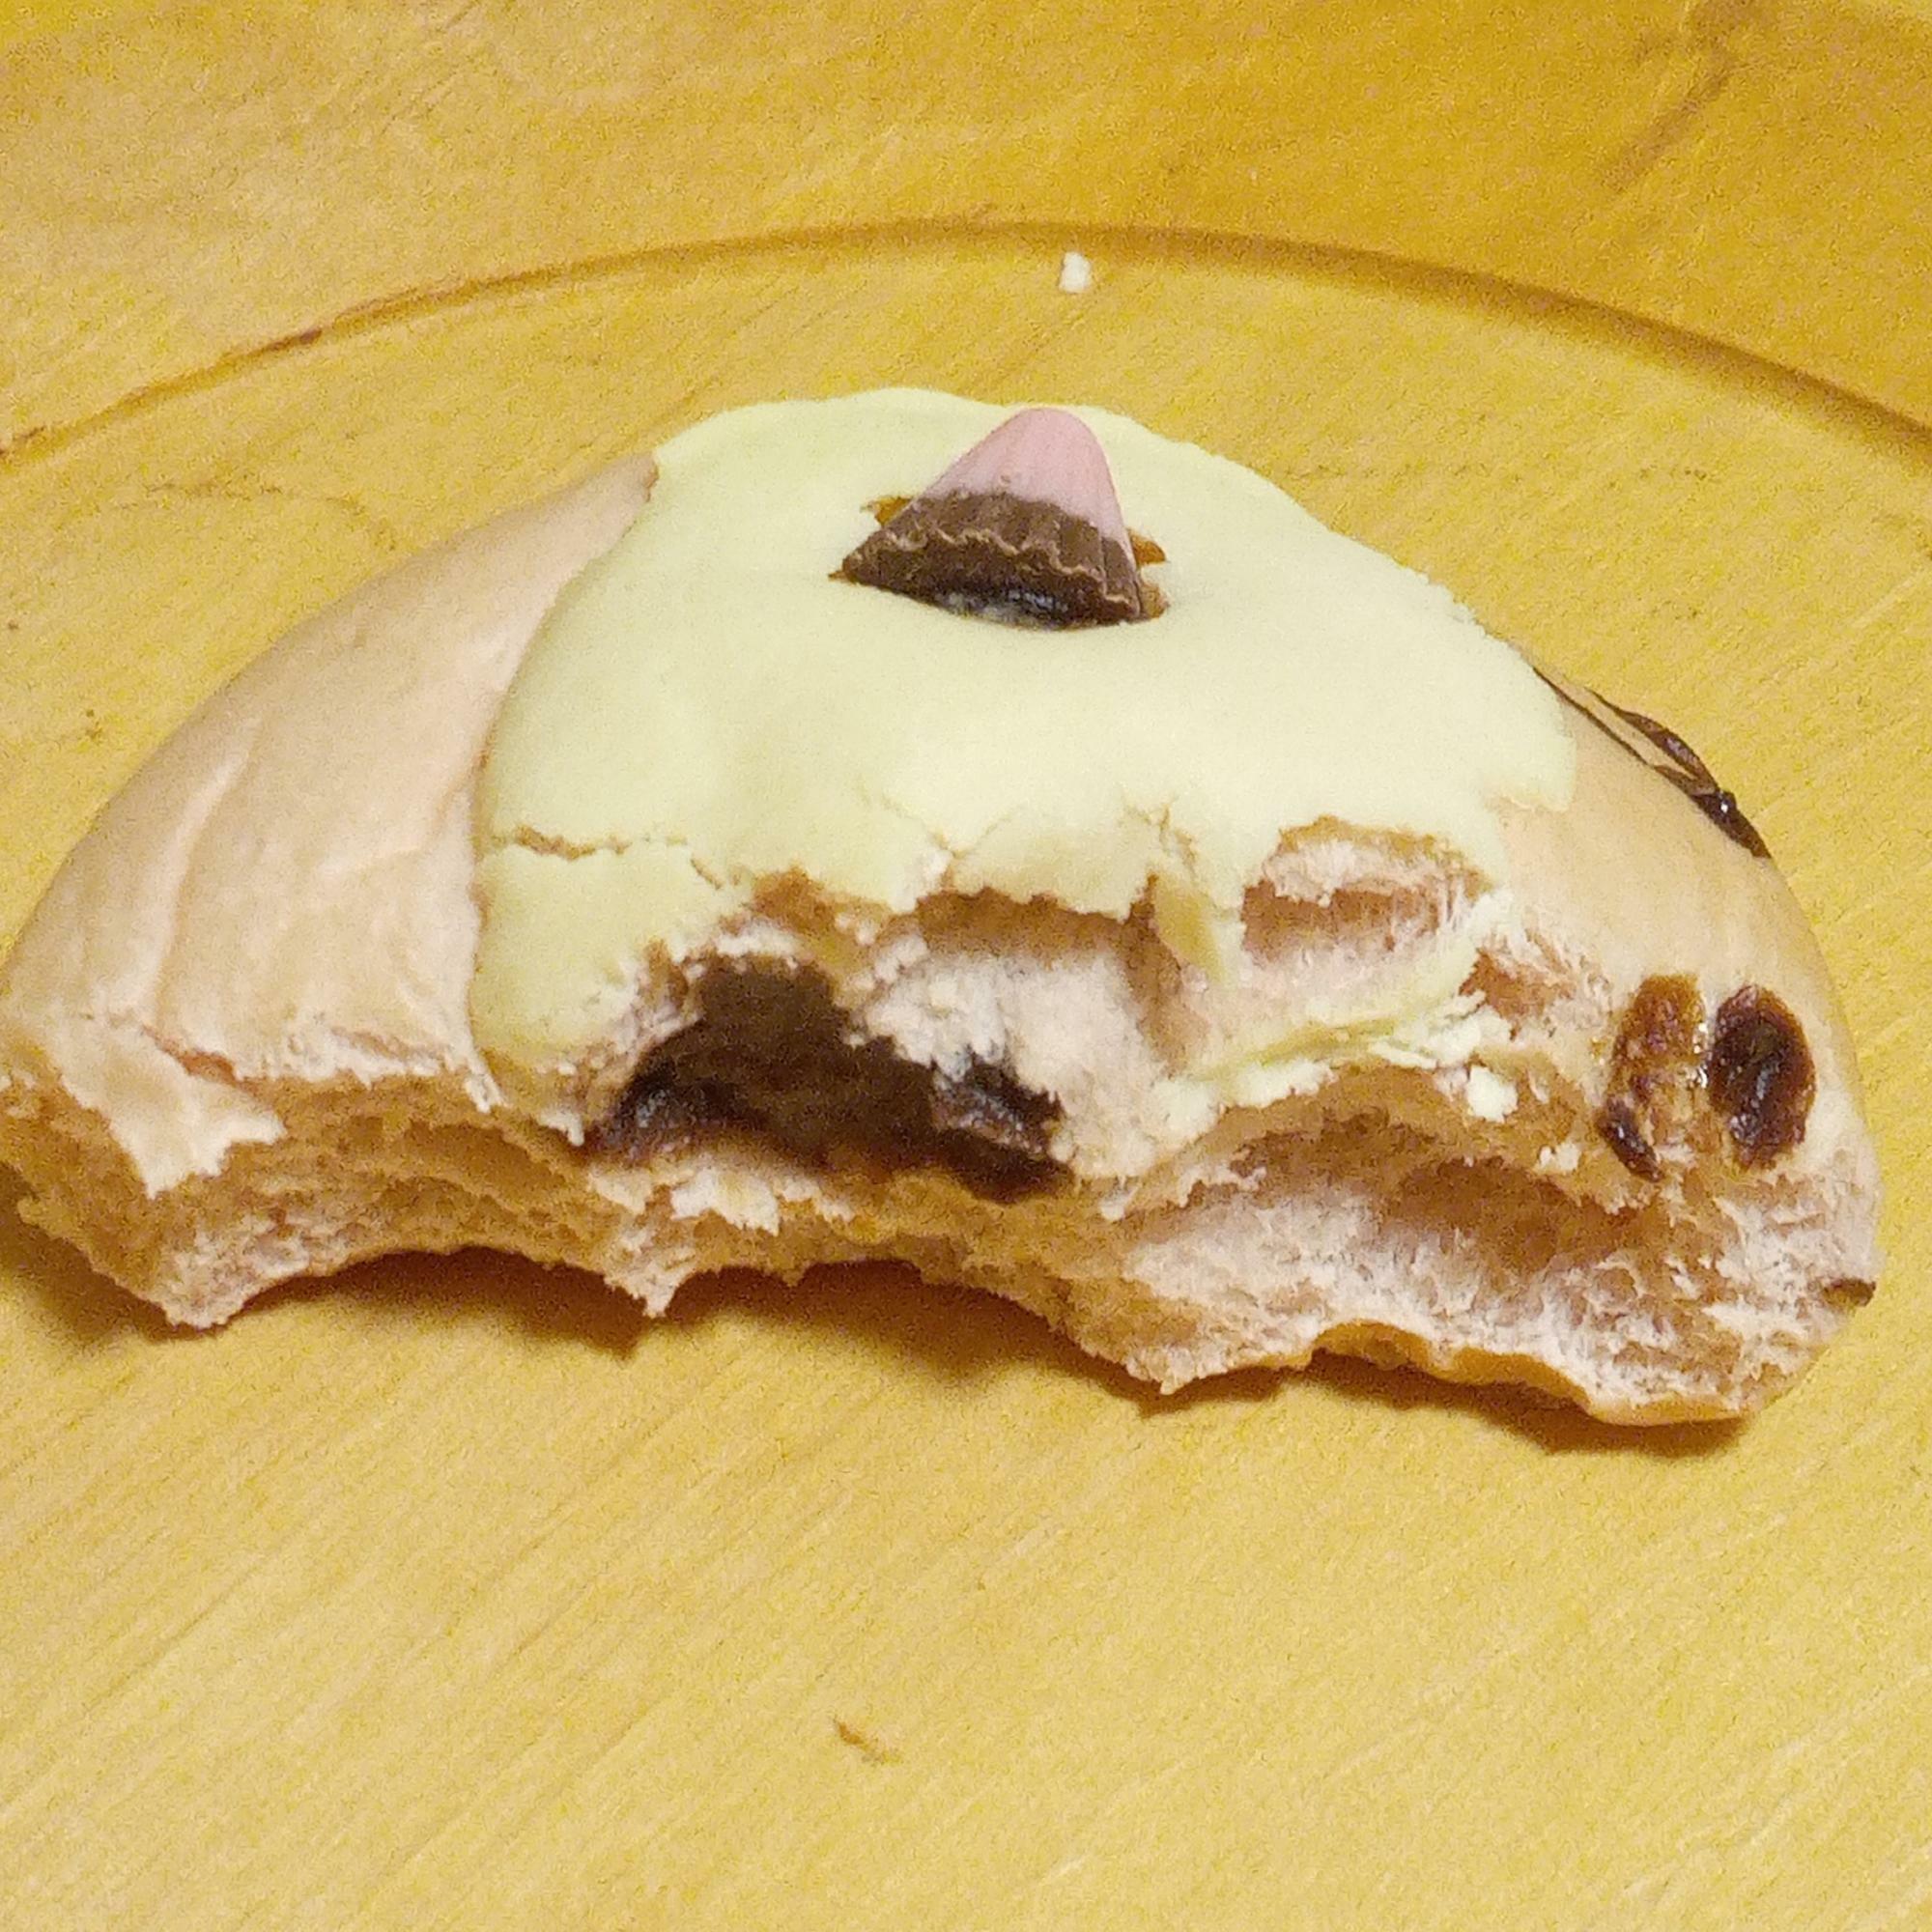 パンの真ん中に甘いチョコレートクリームが入っています。鬼の髪の毛はメロンパンの生地のようでした。